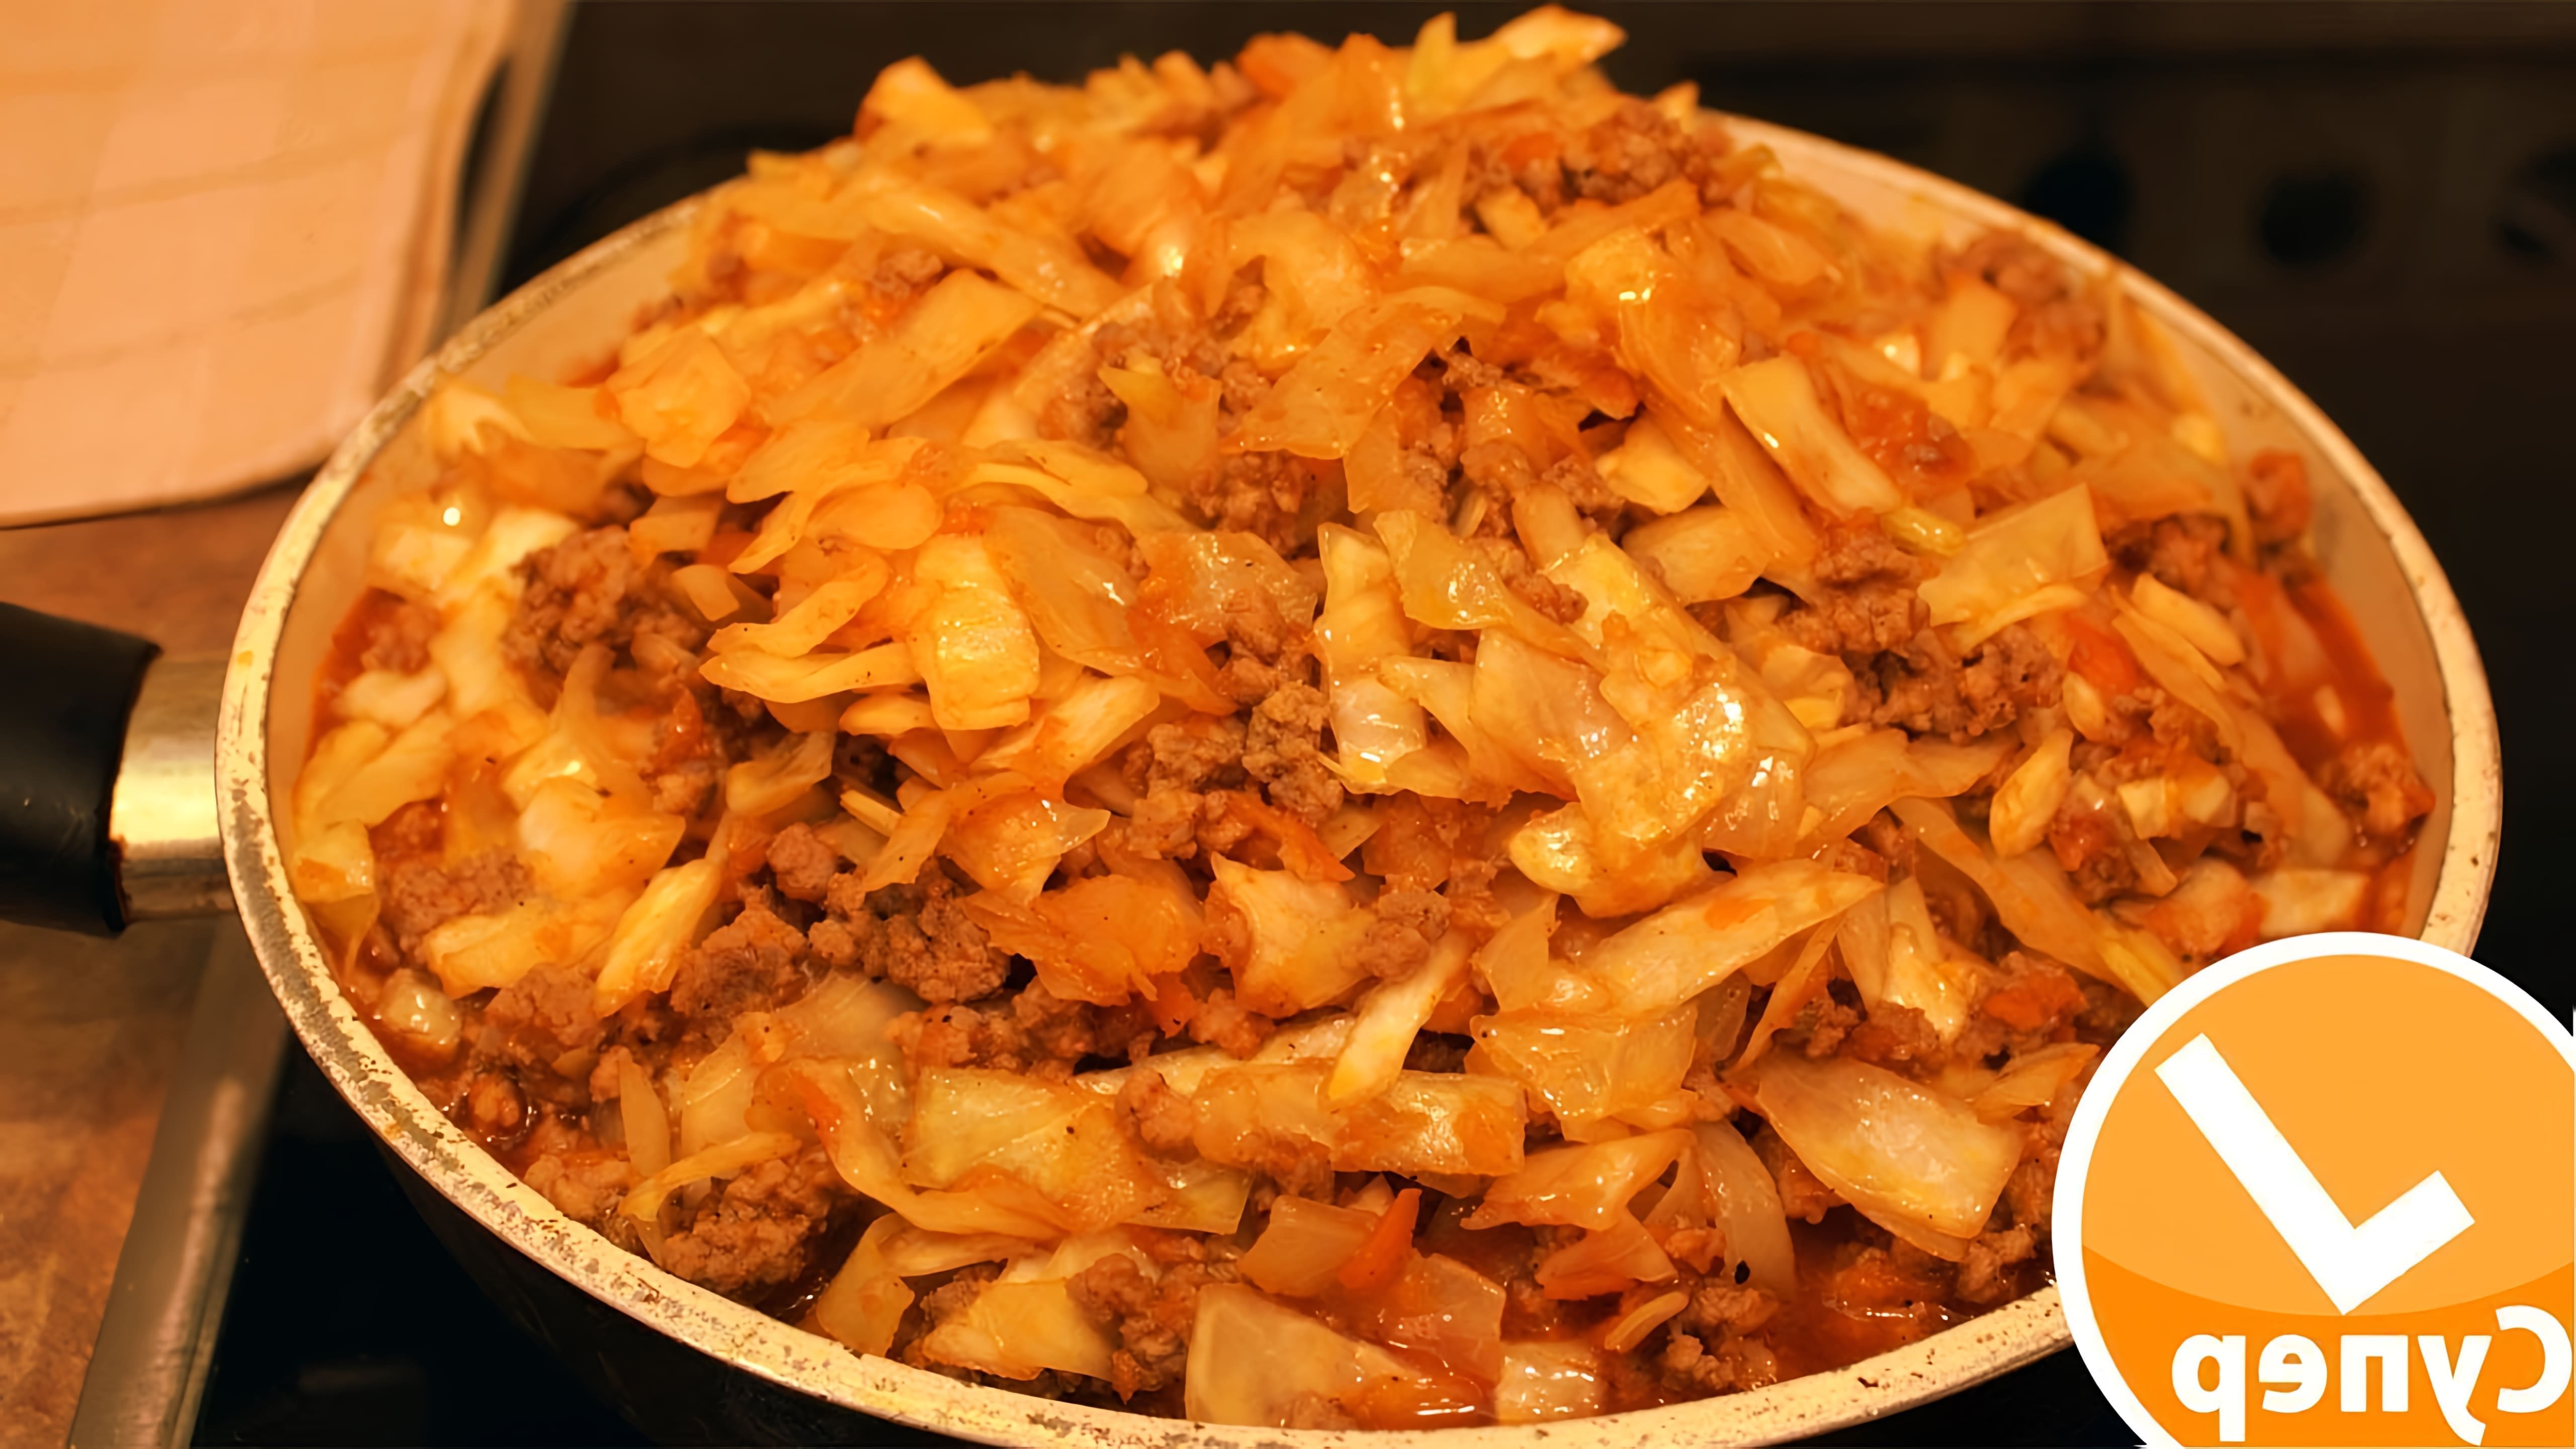 В этом видео демонстрируется процесс приготовления бигуса - блюда из свежей капусты и мяса